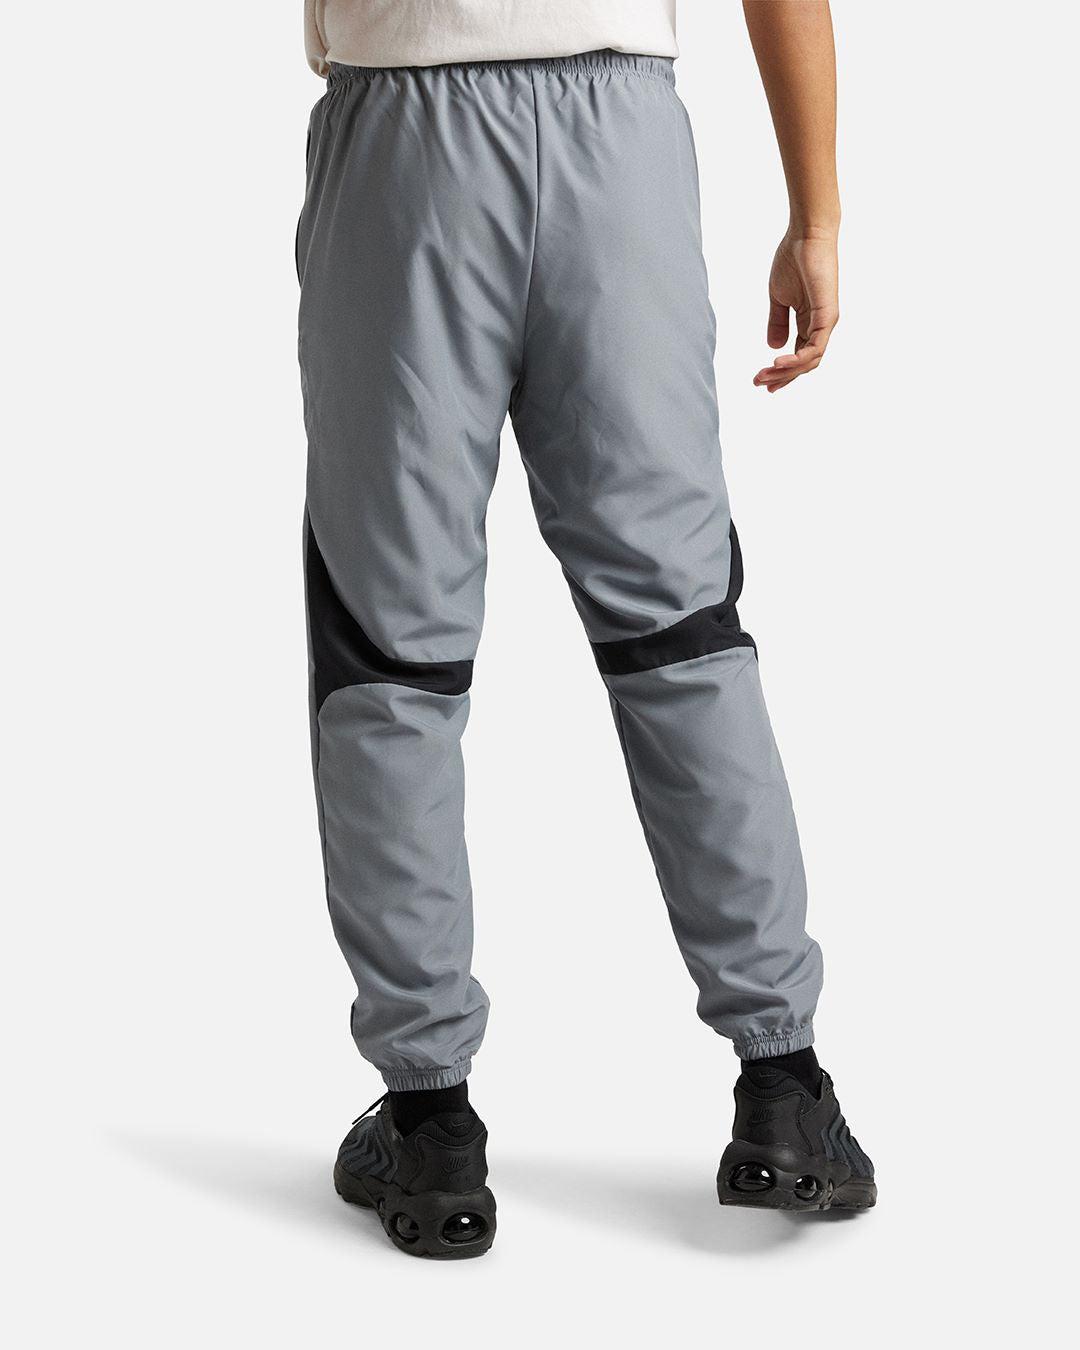 Pantalon de survêtement Nike Academy - Gris/Noir